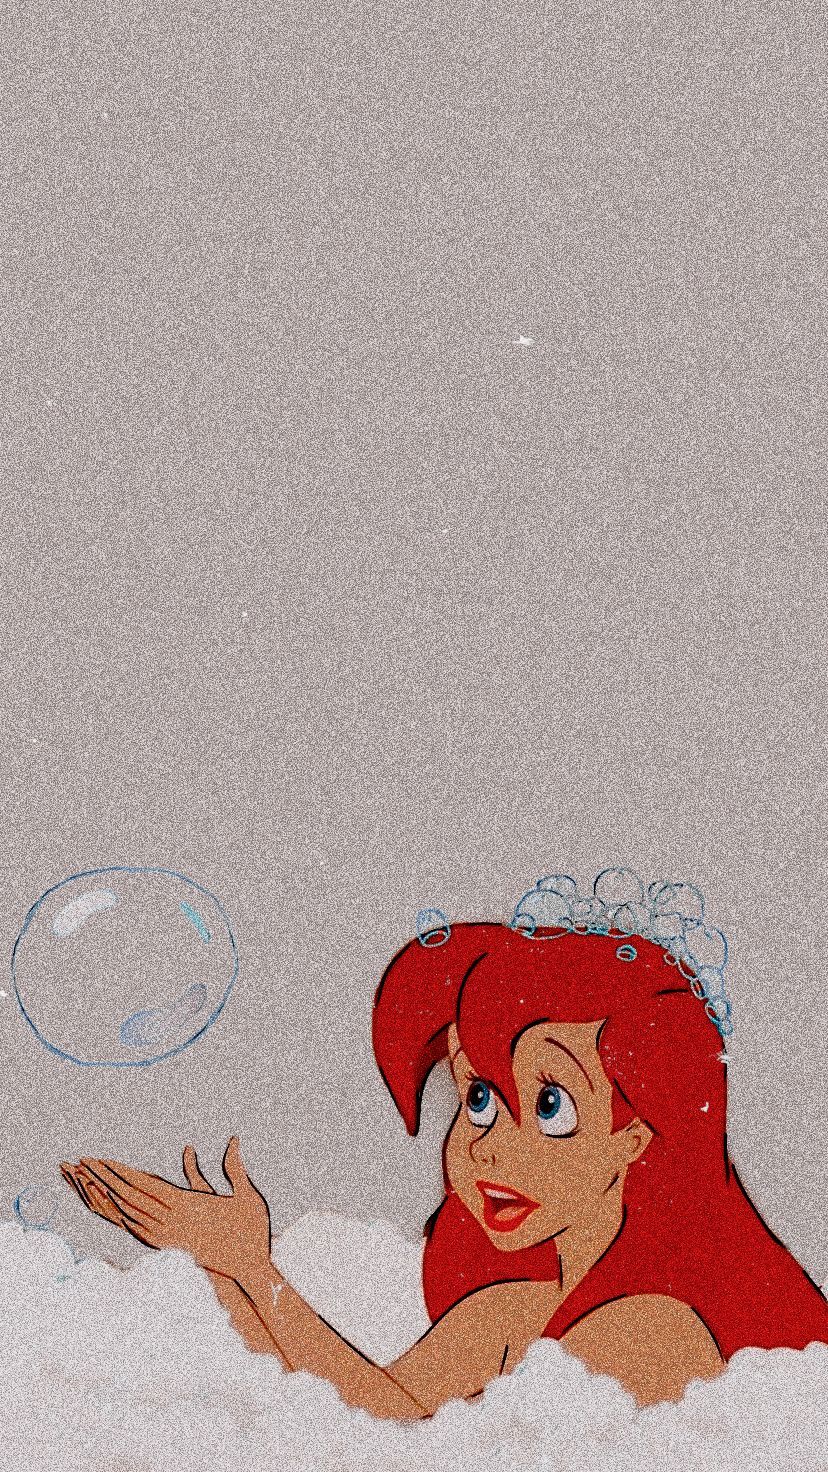 Aesthetic Wallpaper iPhone Tumblr Disney Bakgrunder